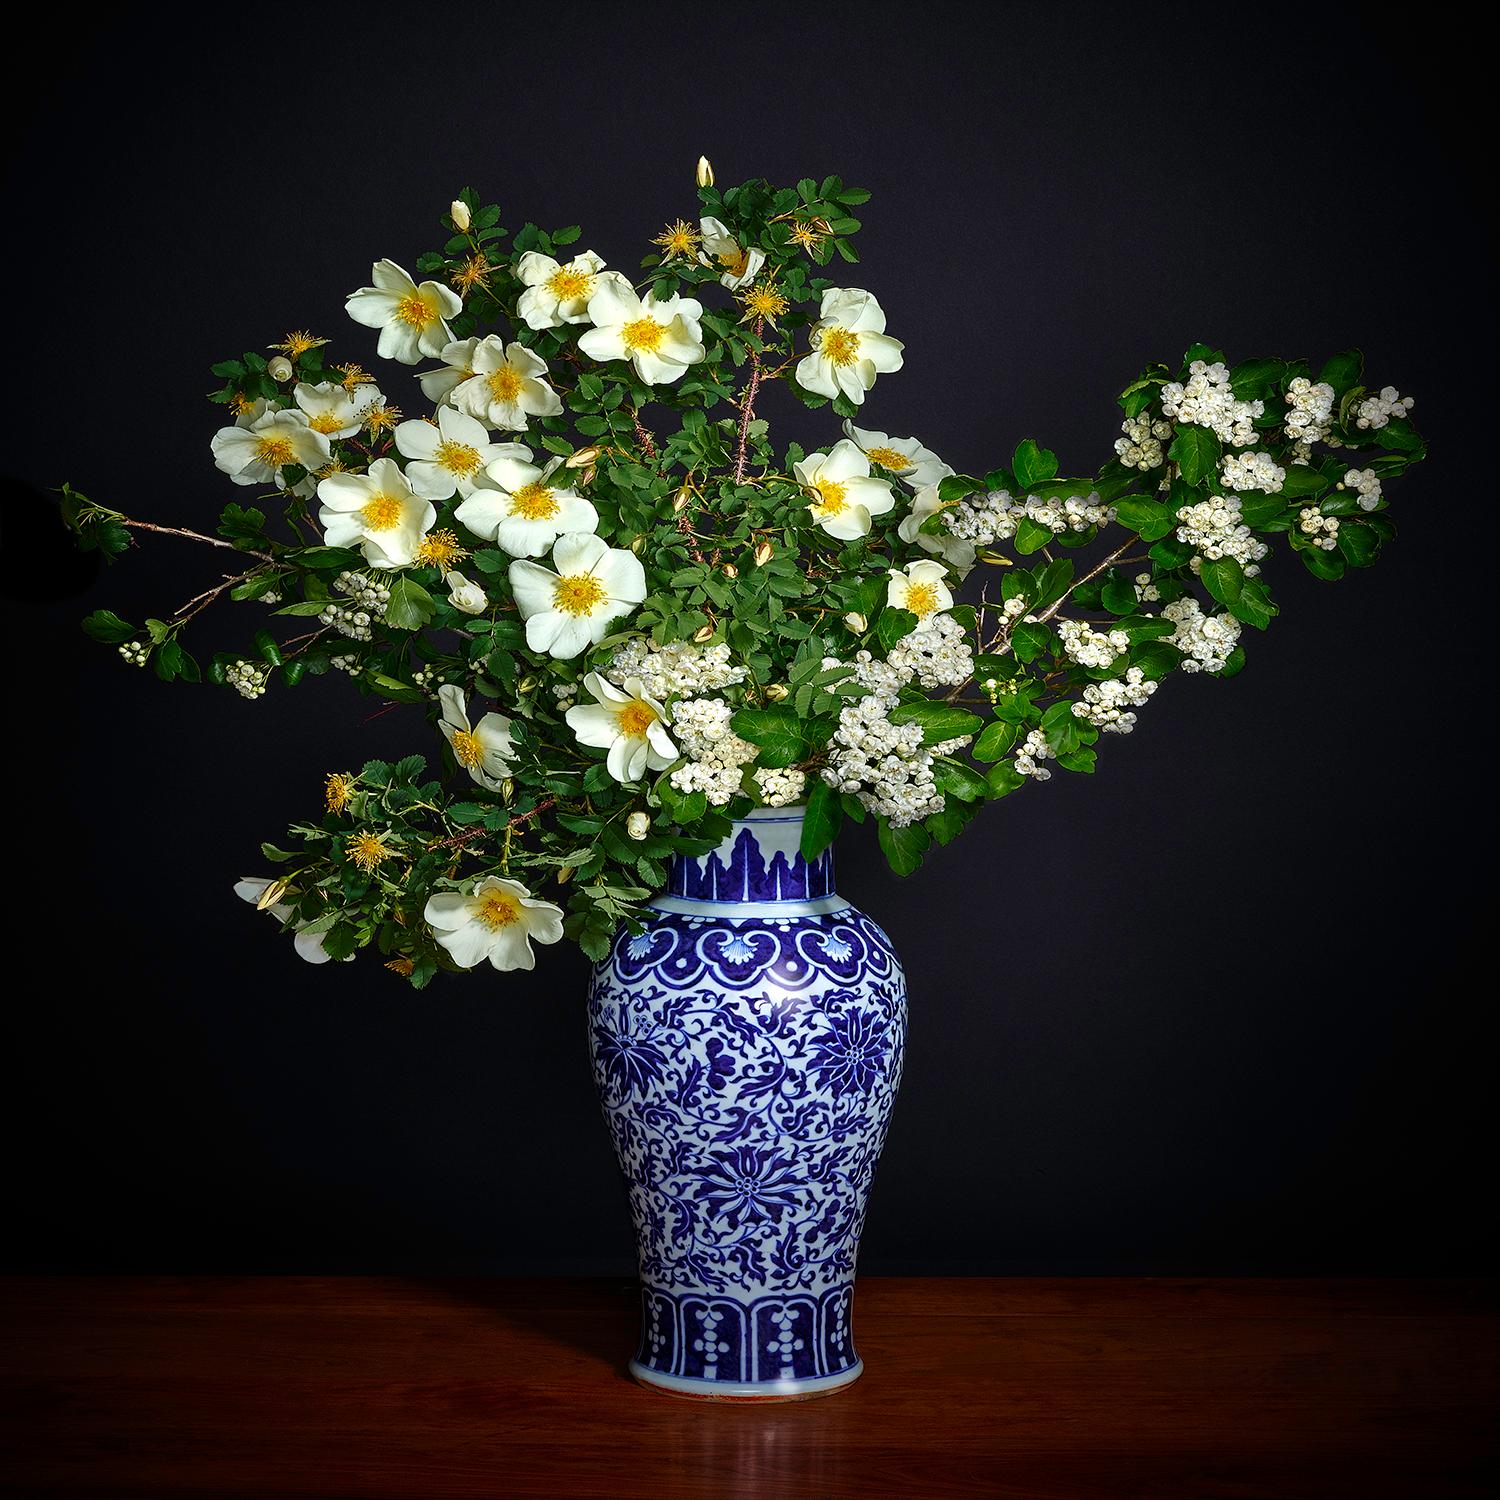 Weiße weiße Hawthorne- und weiße Shrub-Rose in einer blauen und weißen chinesischen Vase